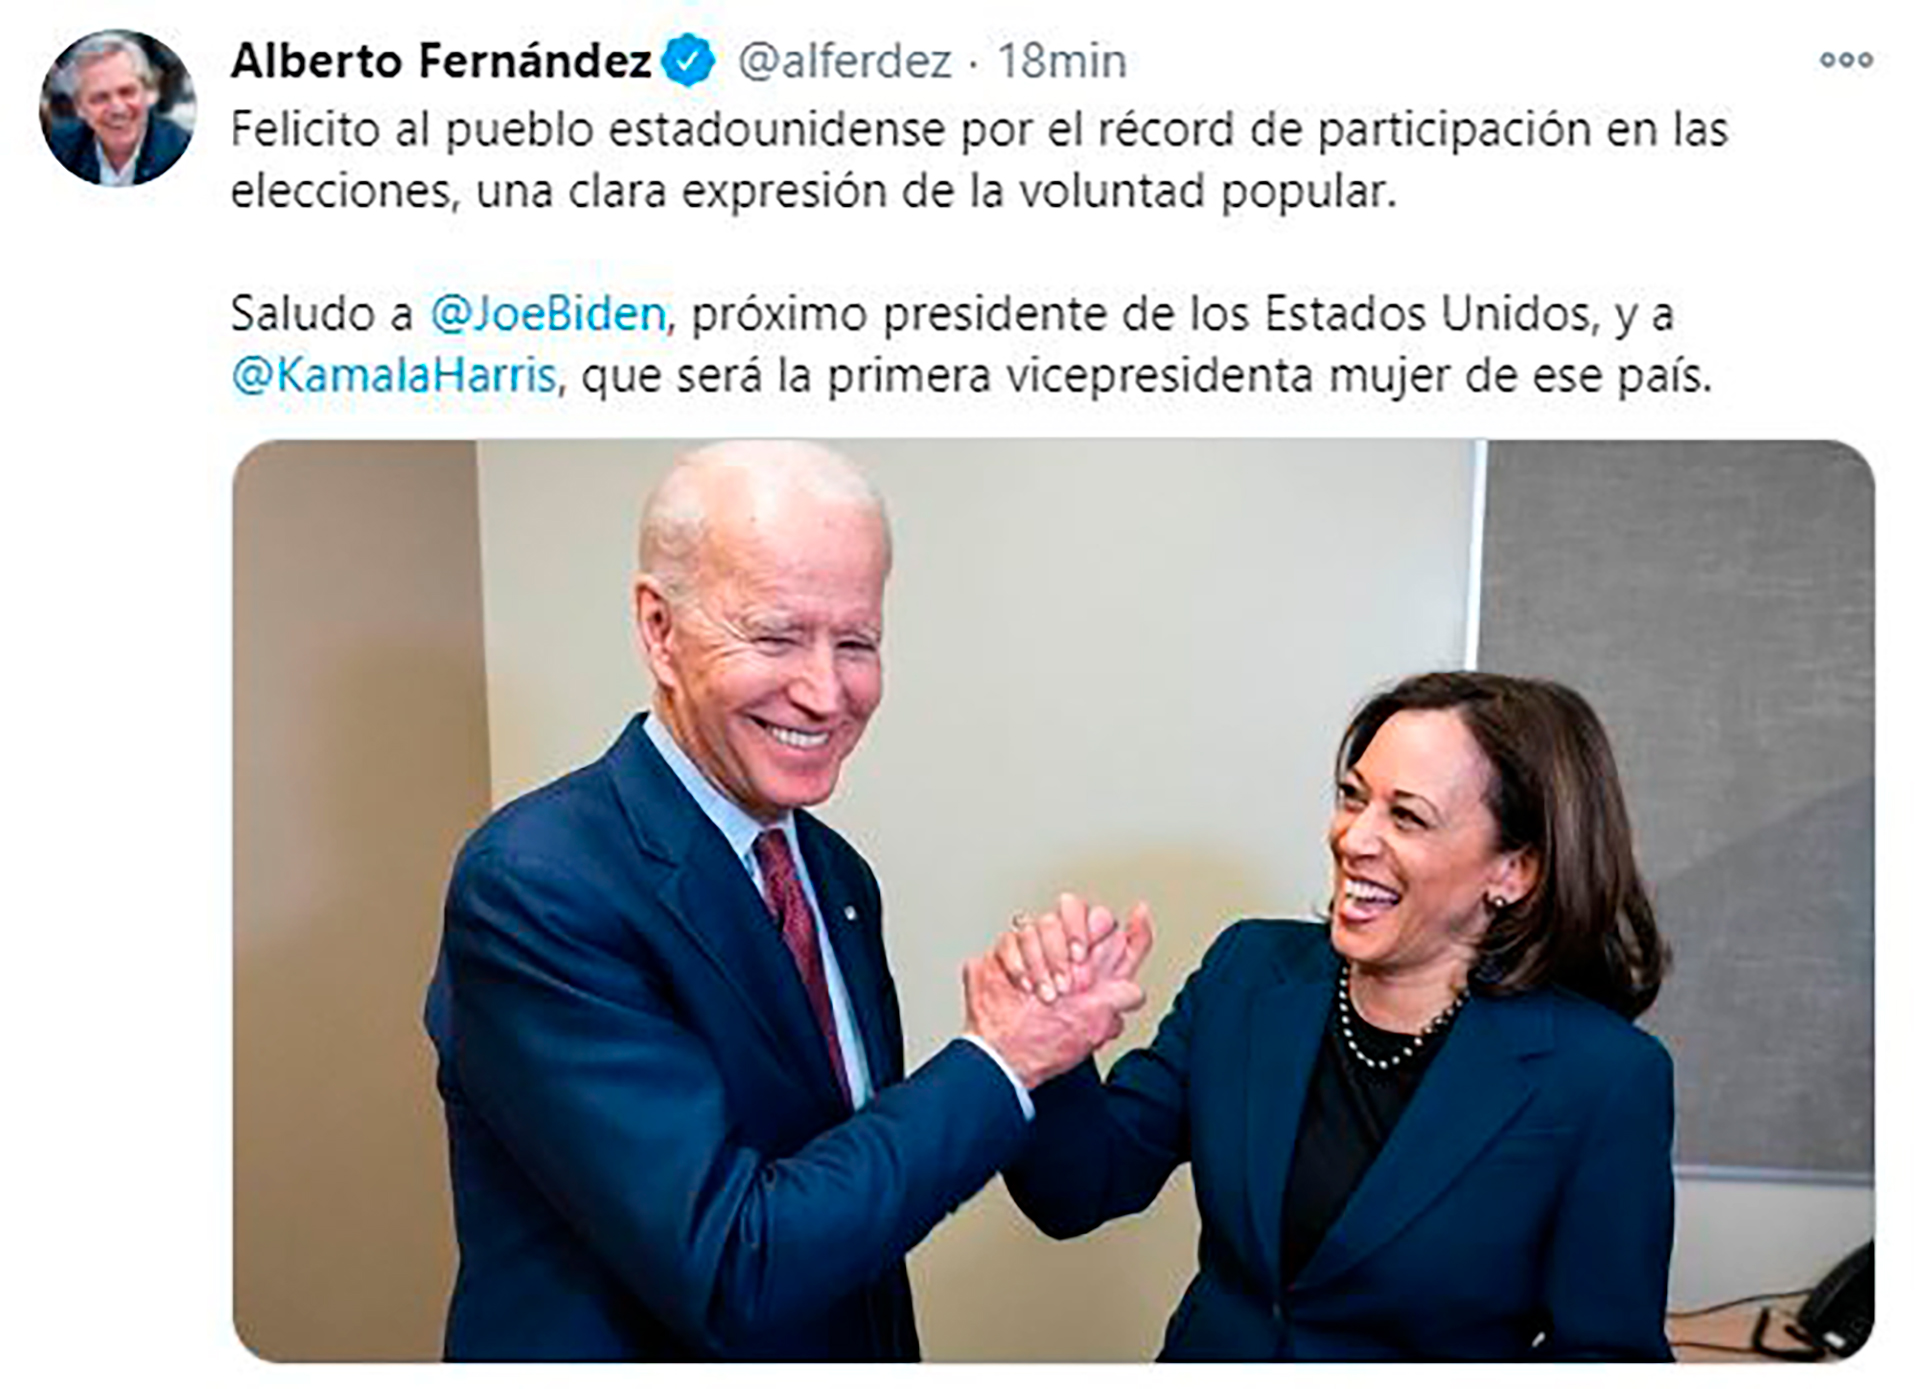 Tuit de Alberto Fernández felicitando a Joseph Biden y Khamala Harris por su triunfo electoral, semanas antes de la resolución de la Suprema Corte de los Estados reconociendo su victoria frente a Donald Trump